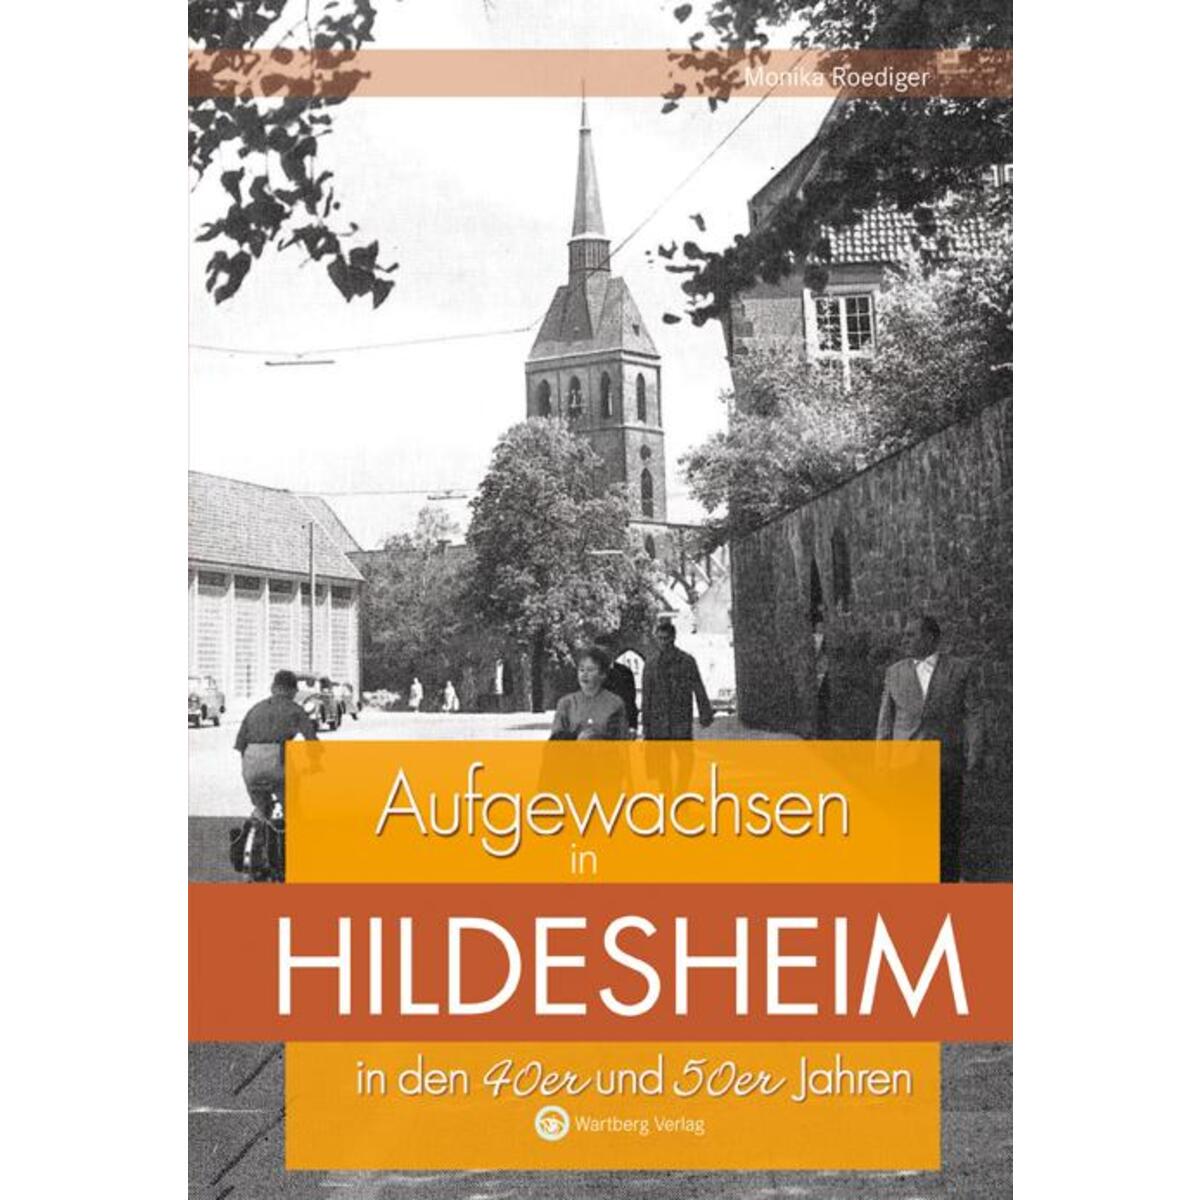 Aufgewachsen in Hildesheim in den 40er und 50er Jahren von Wartberg Verlag